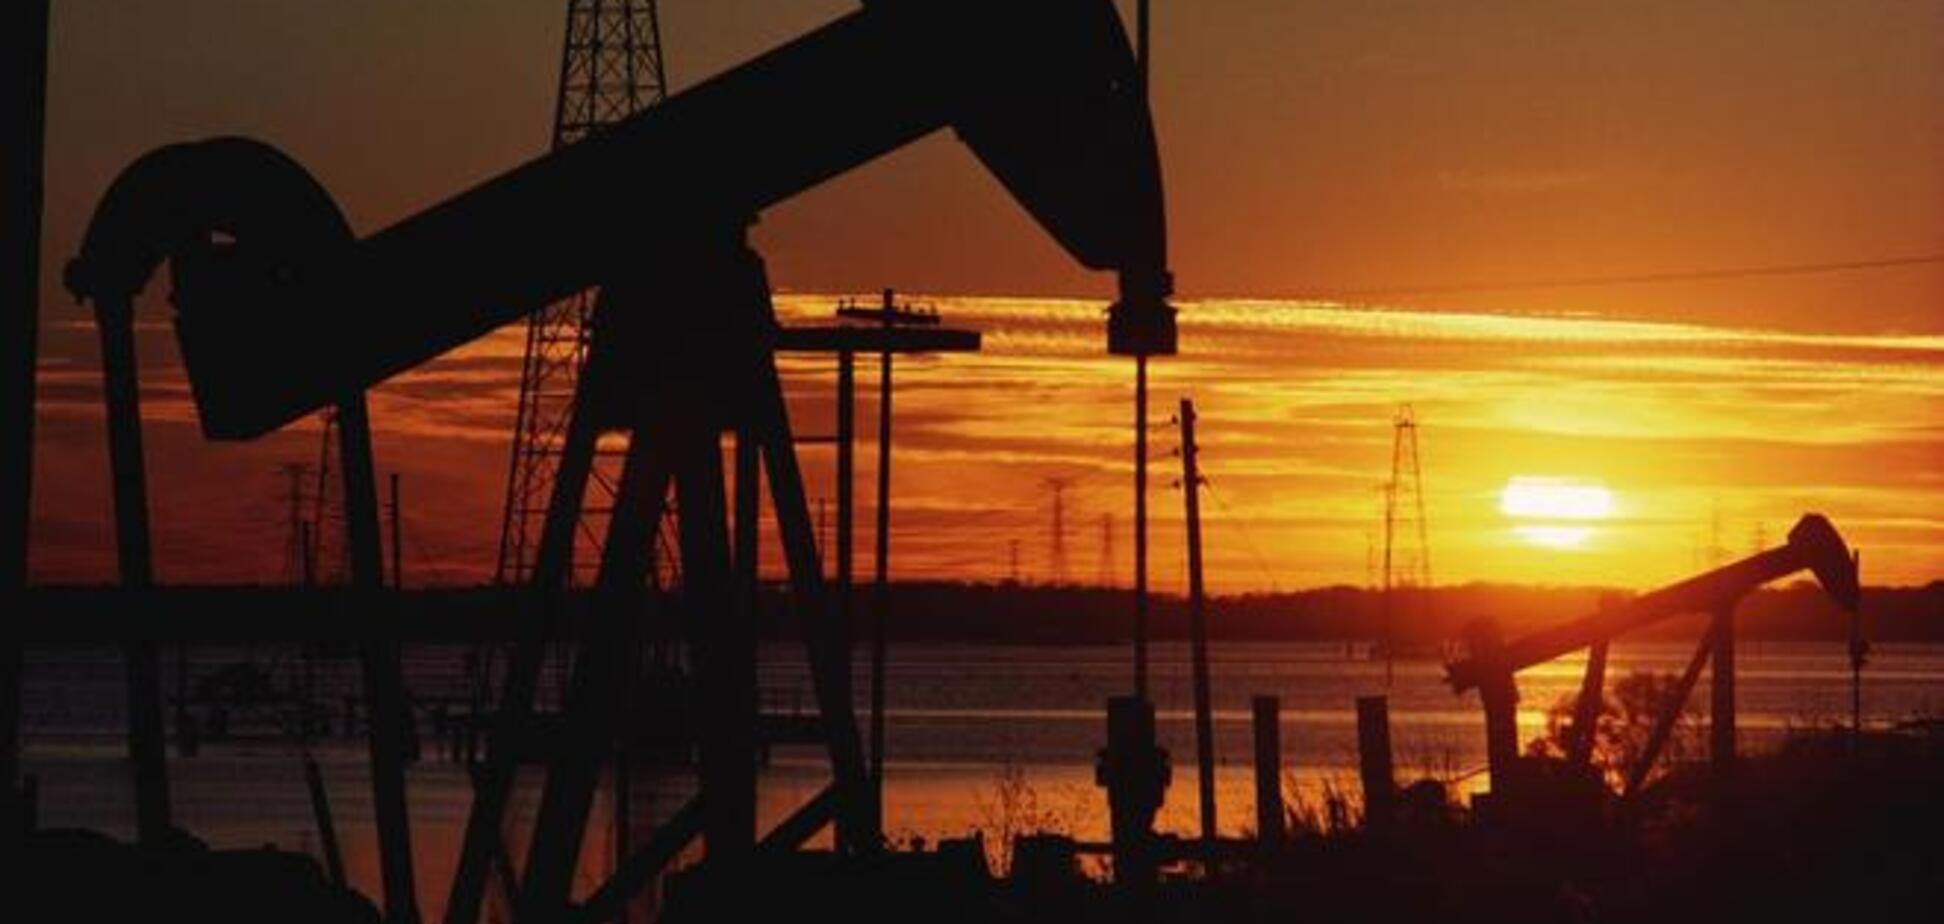 Російські нафтовики визнали збиток для галузі через санкції Заходу